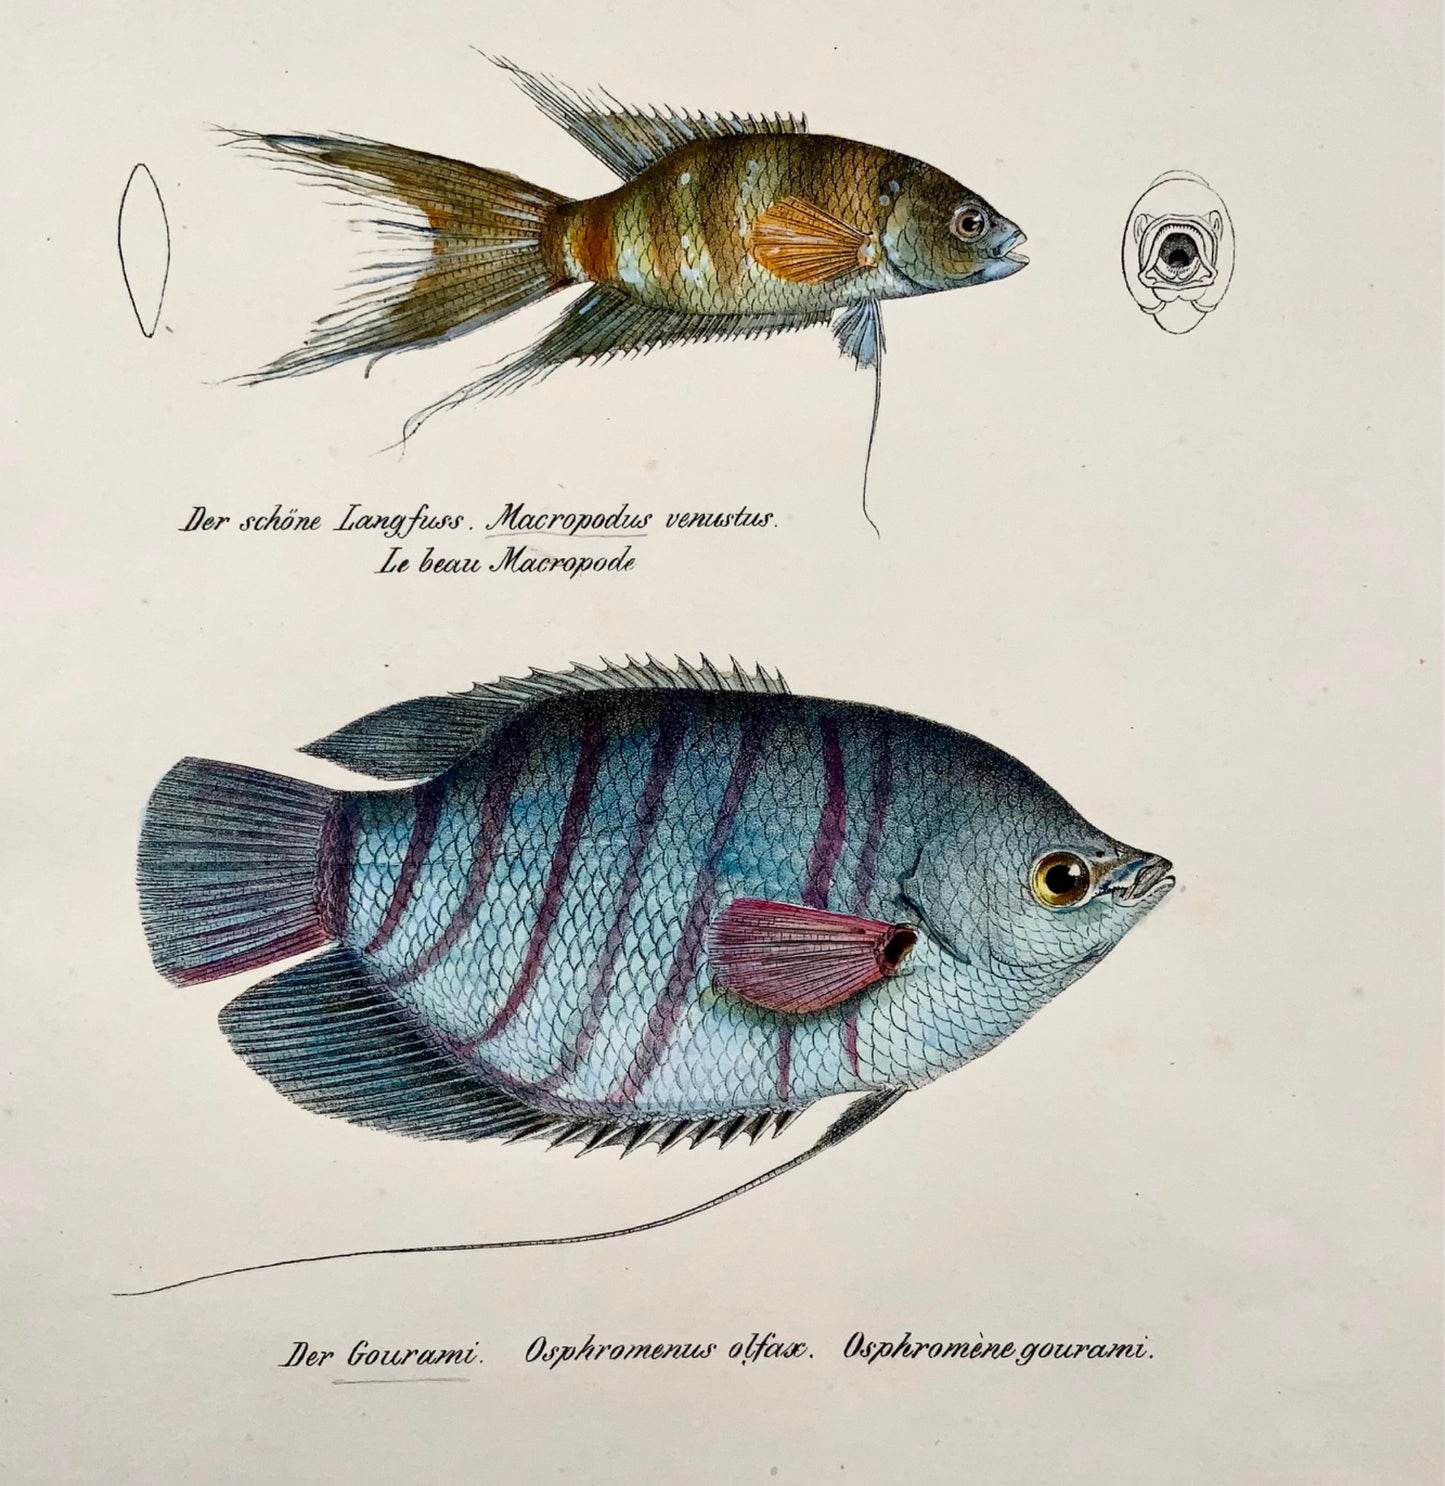 1833 Gourami, labyrinthe, poissons d'aquarium, H Schinz, folio, lithographie coloriée